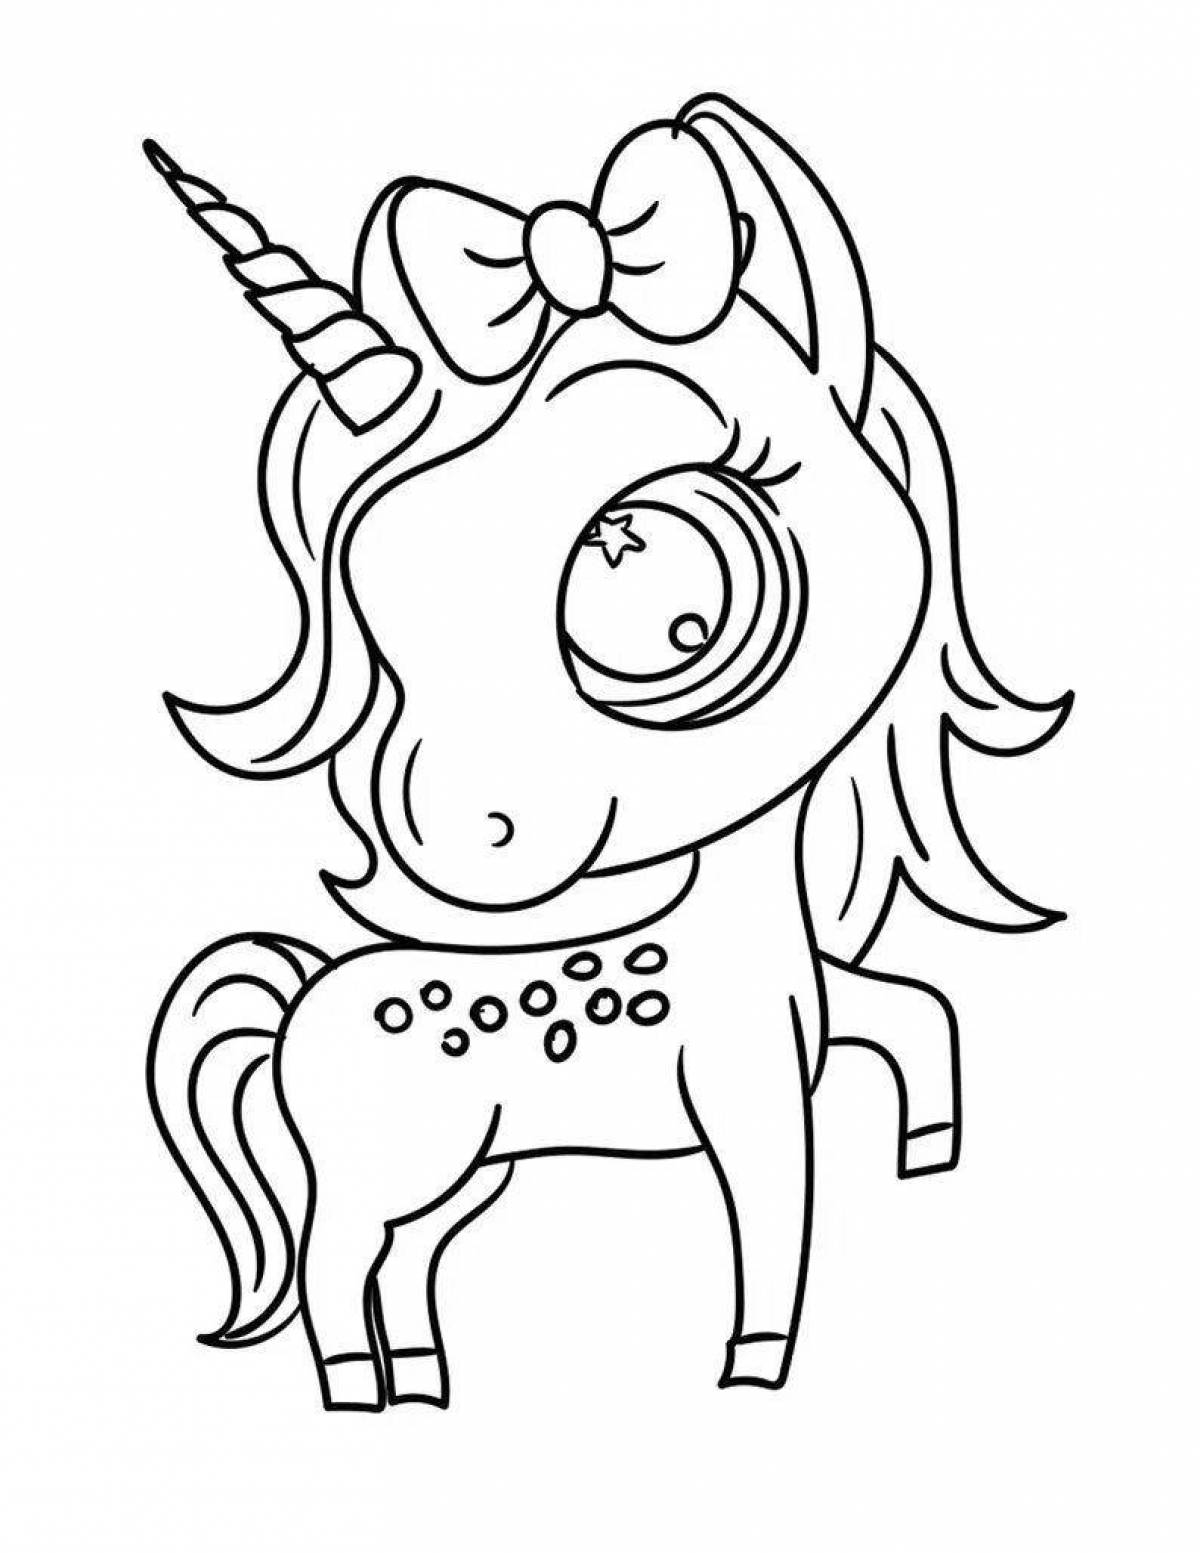 Joyful unicorn coloring pages